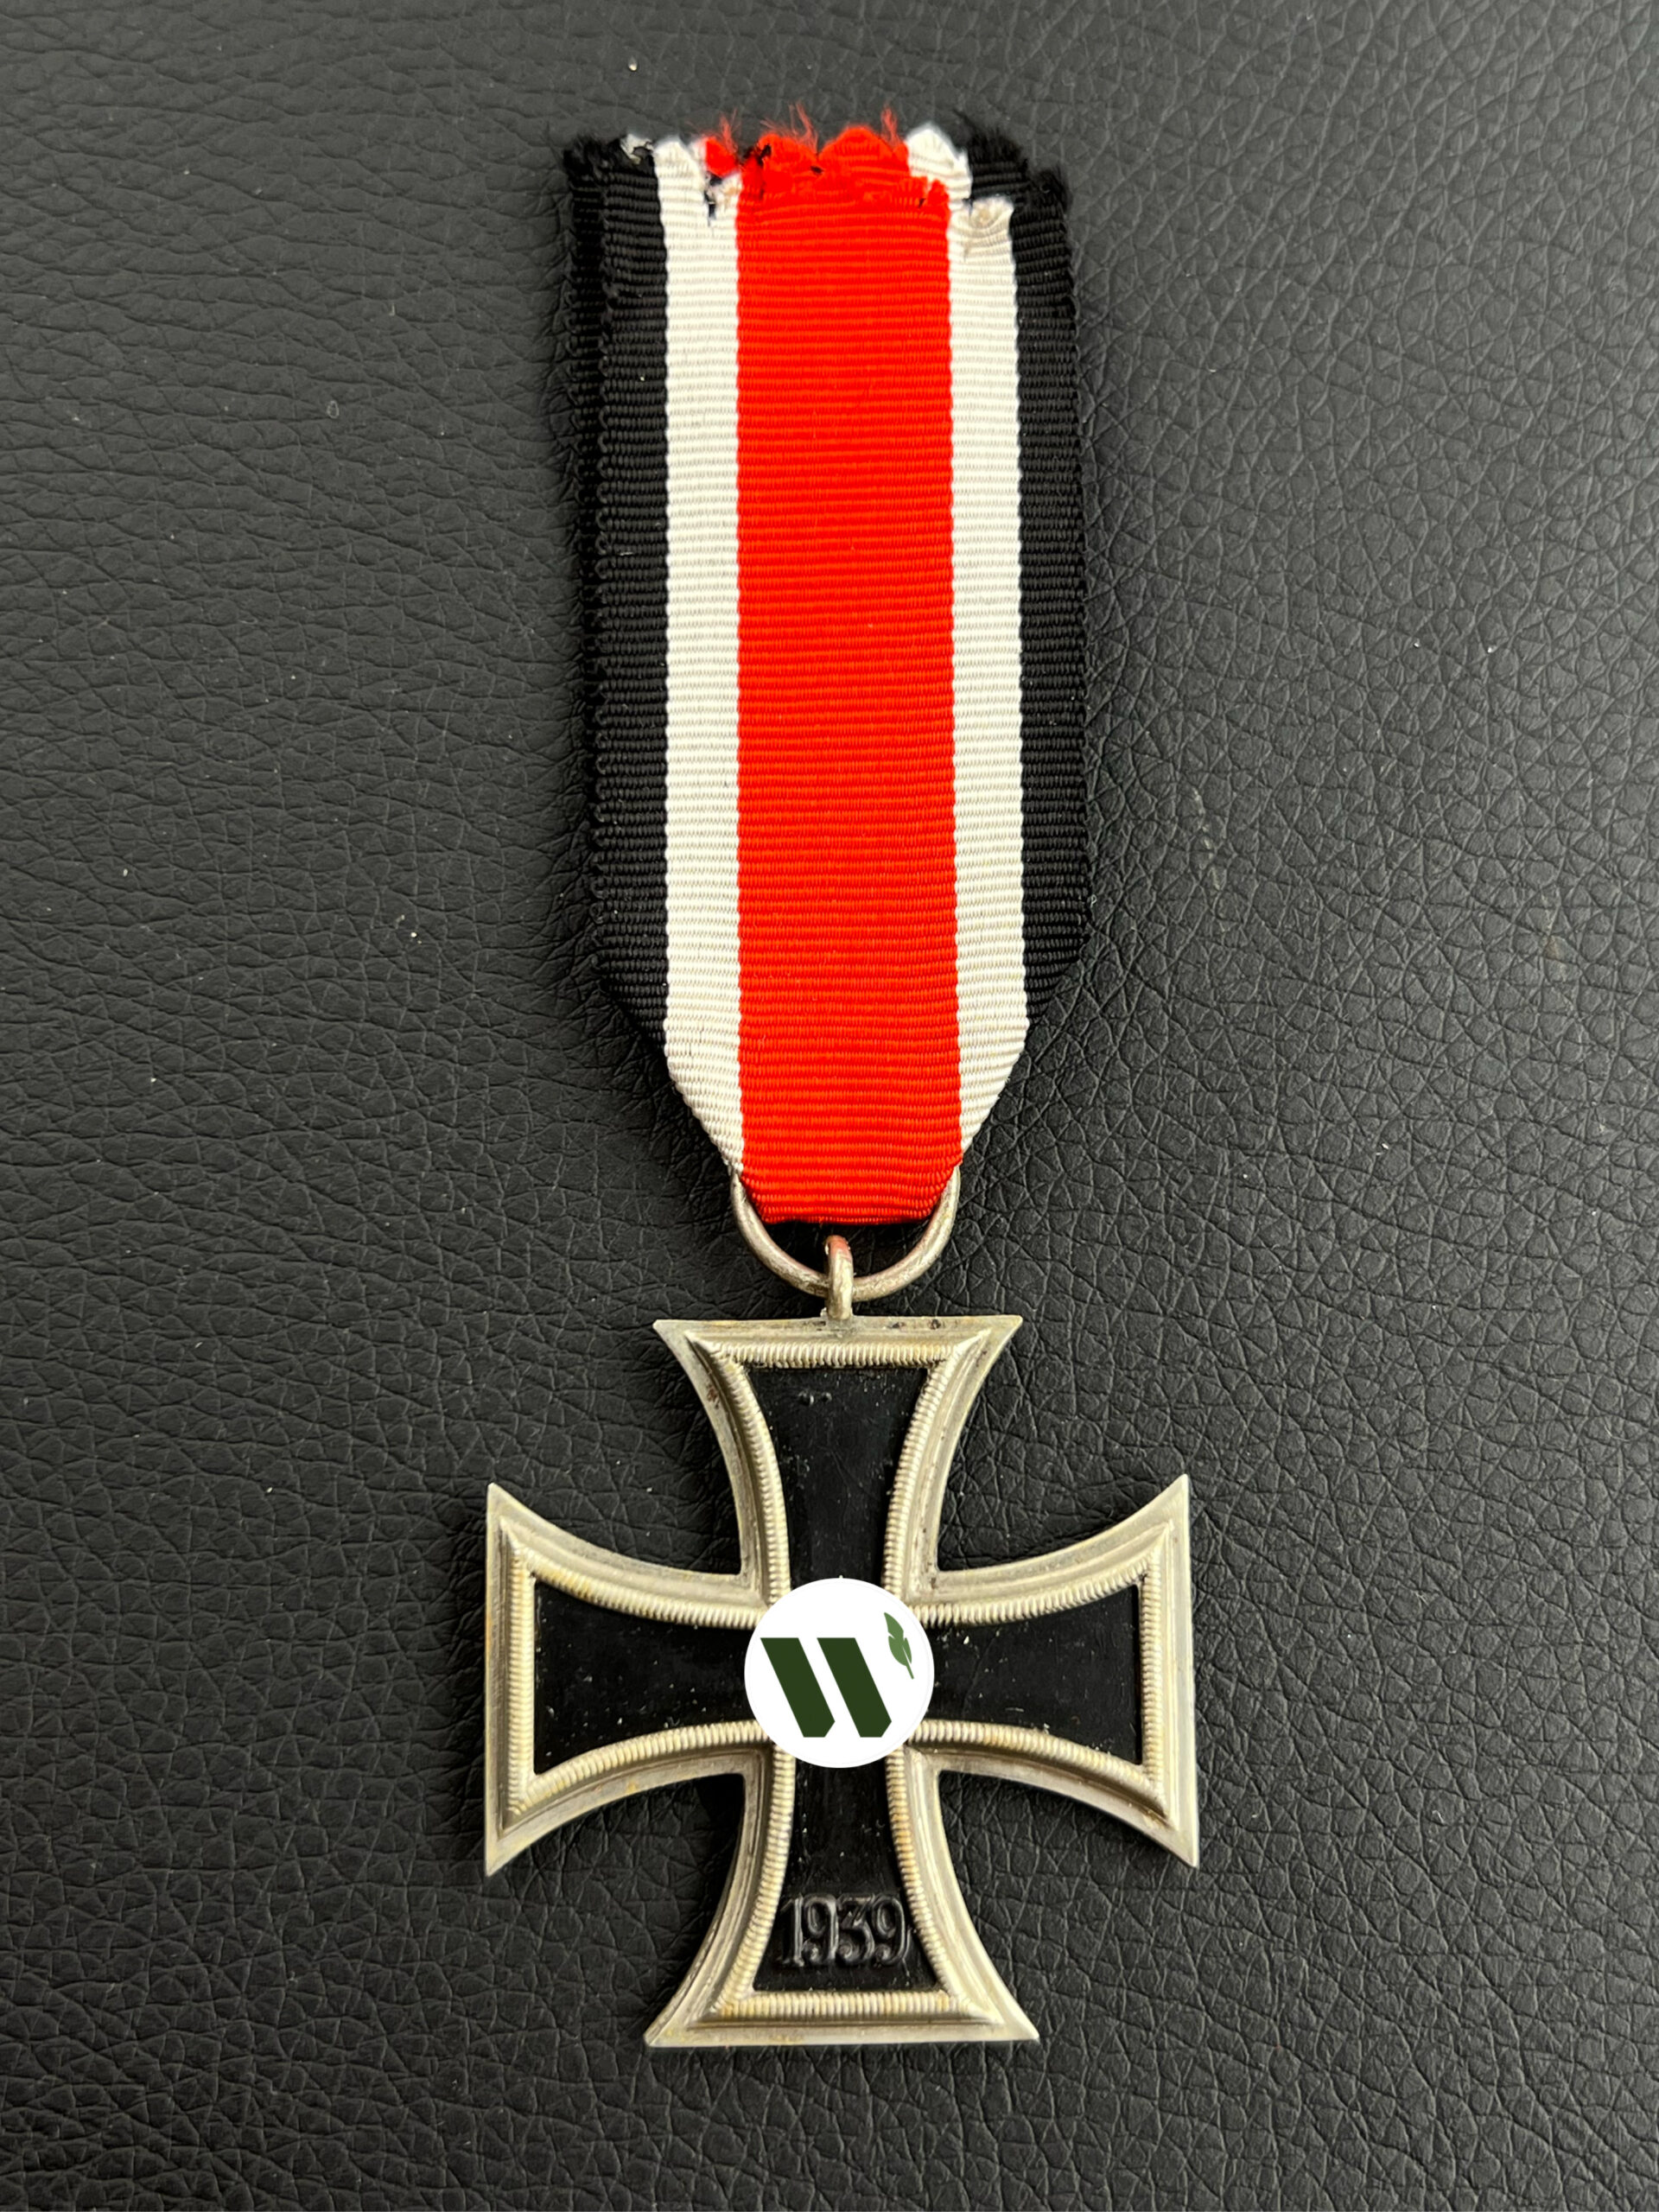 Железный крест 2-го класса 1939 года. Составной, магнитный. Тип 